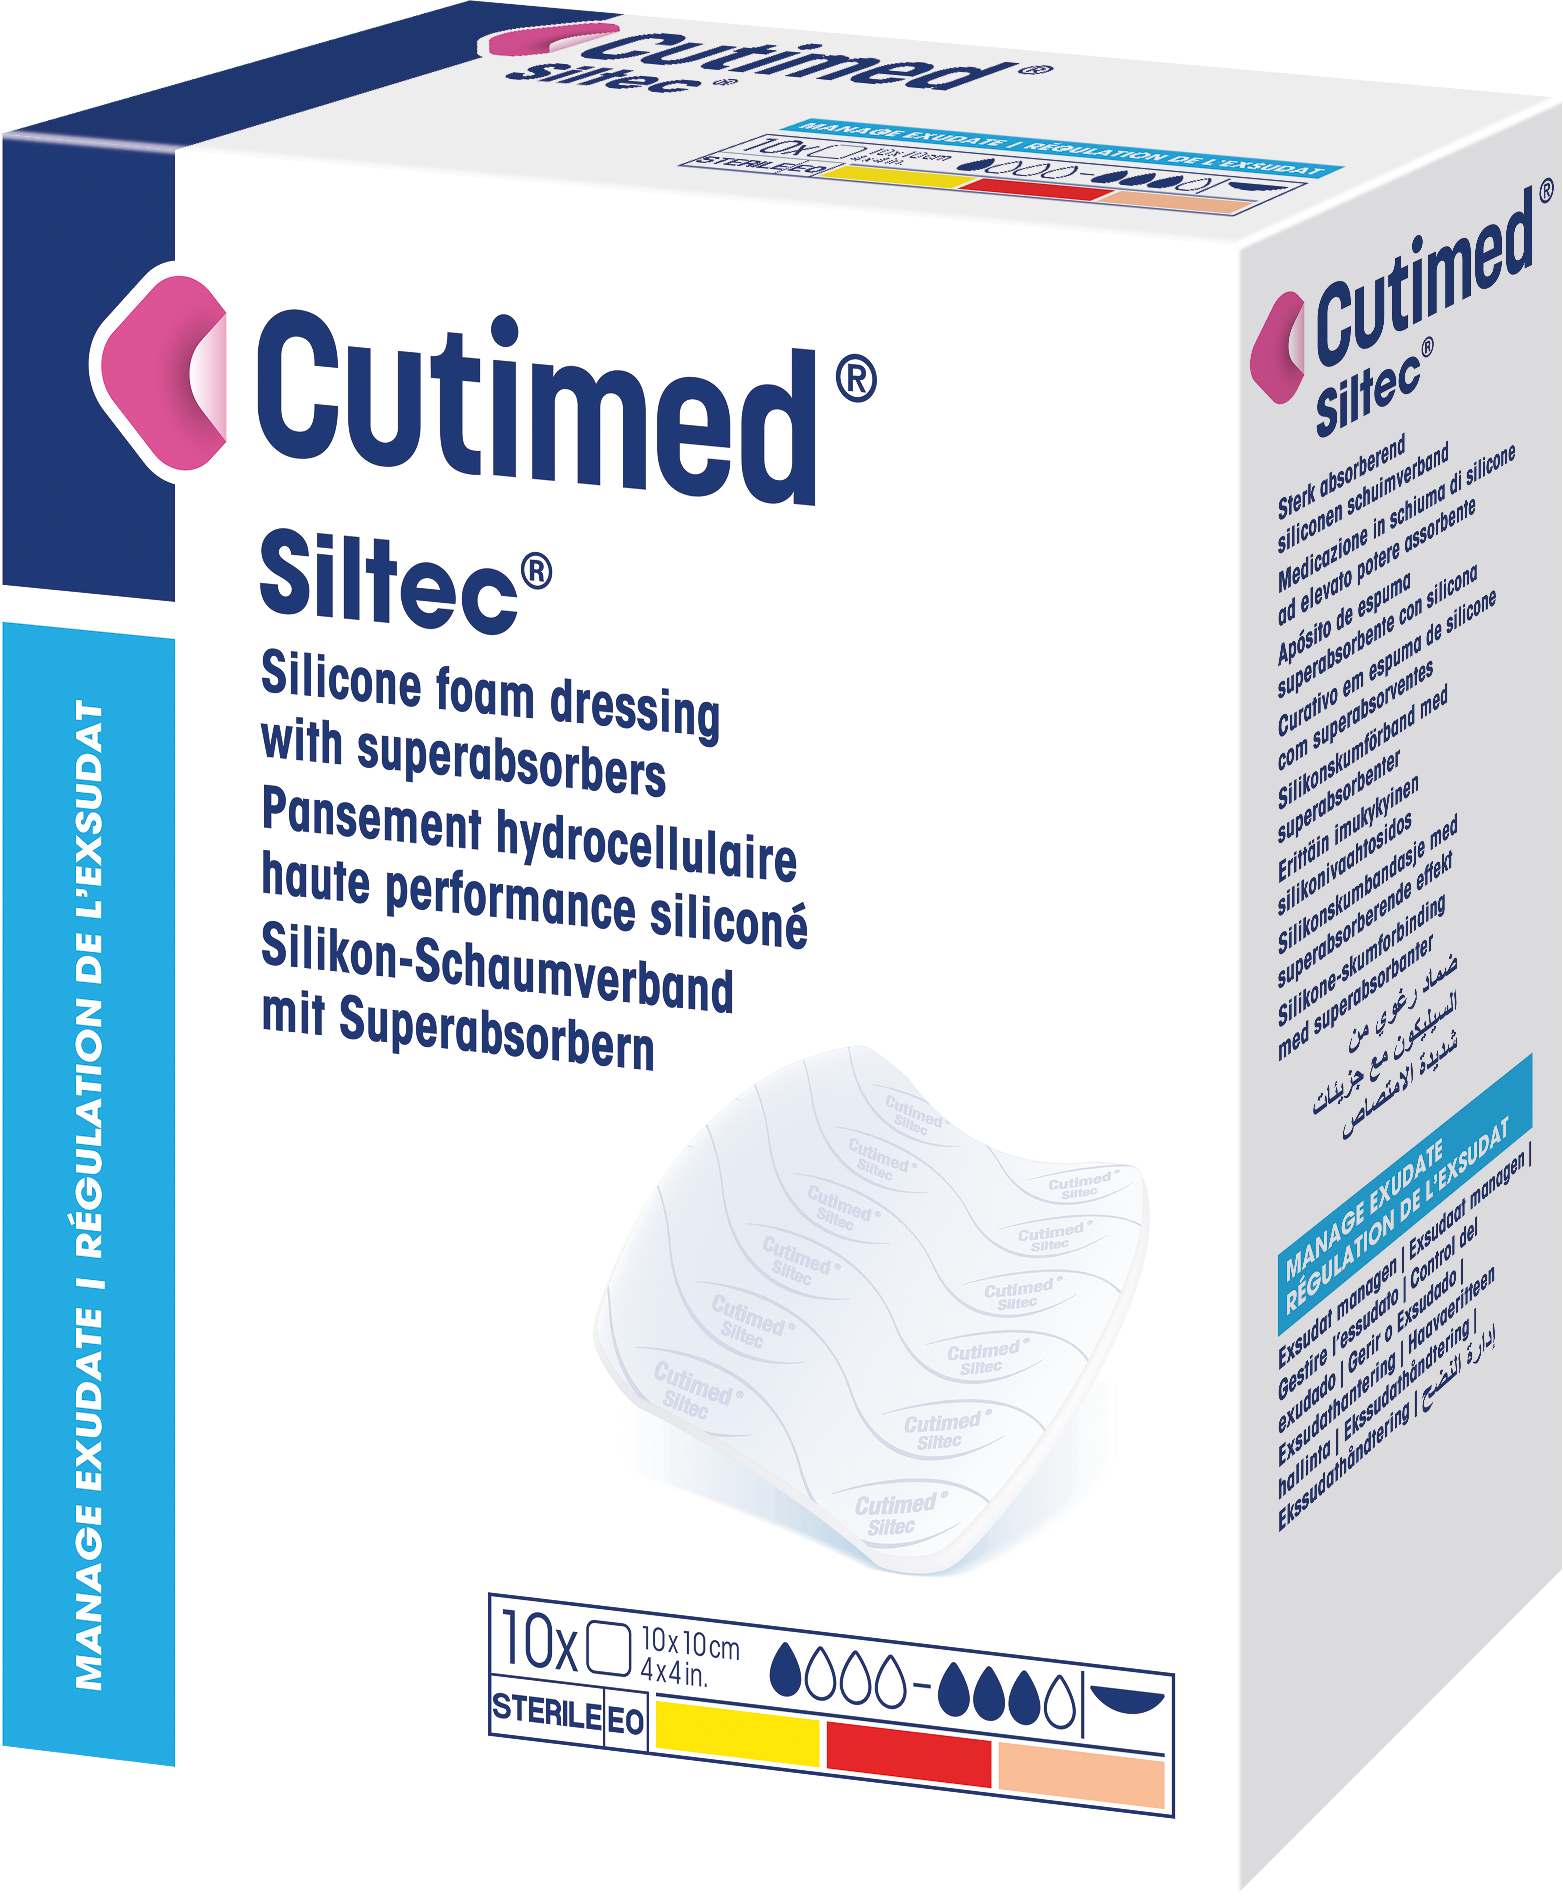 Bilde som viser et pakningsbilde av Cutimed® Siltec®